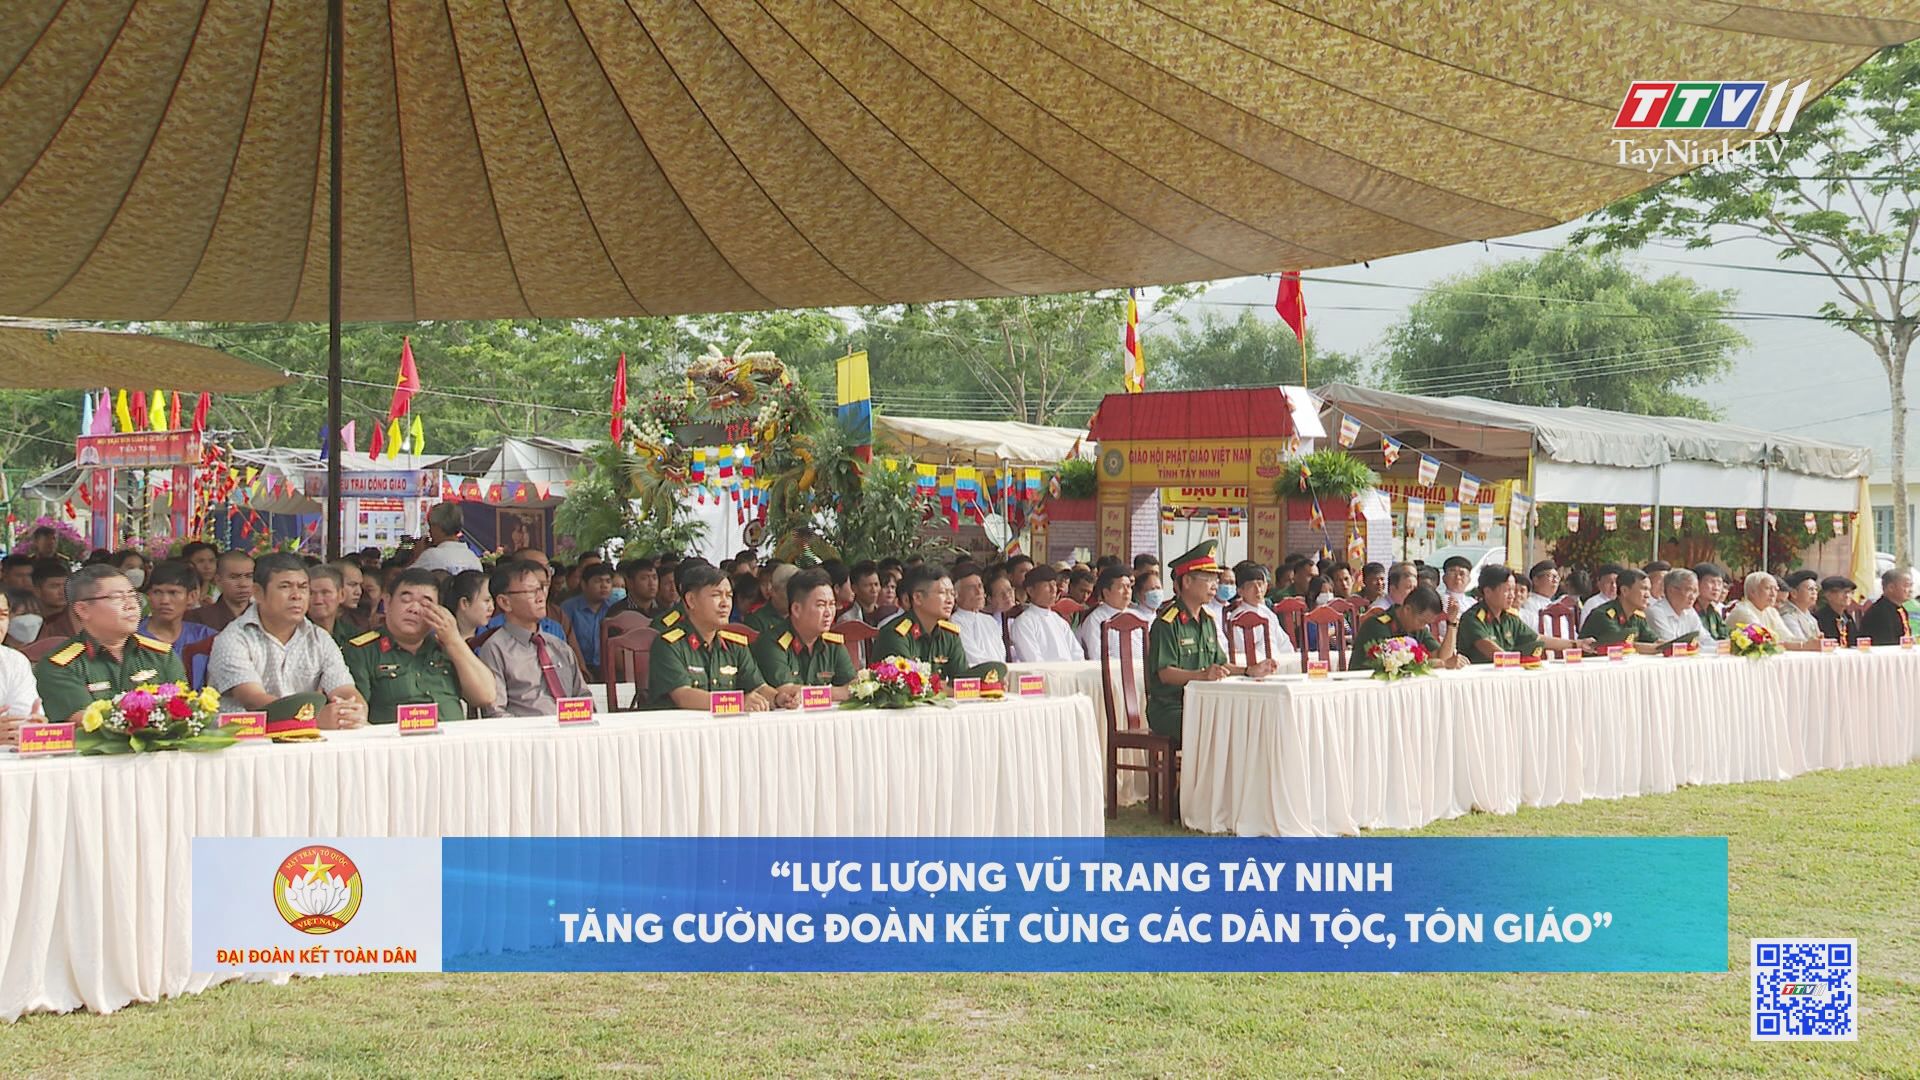 Lực lượng vũ trang Tây Ninh tăng cường đoàn kết cùng các dân tộc, tôn giáo | Đại đoàn kết toàn dân | TayNinhTV